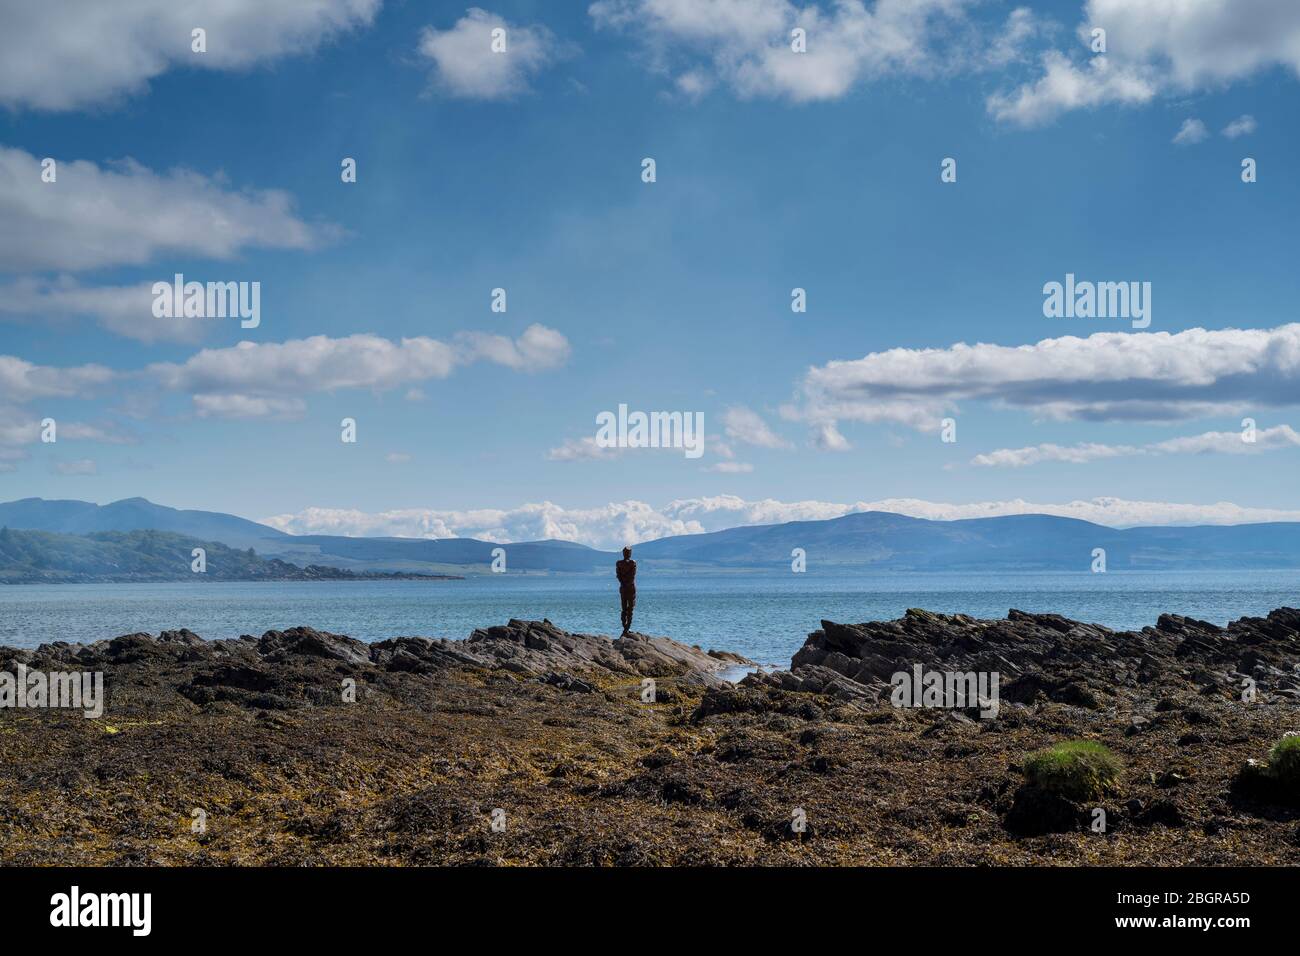 La SCULTURA di Antony Gormley È UN'ASTRATTA forma umana che si affaccia su Saddell Bay, Kilbrannan Sound ad Arran dalle rocce nella penisola di Kintyre, Scotl Foto Stock